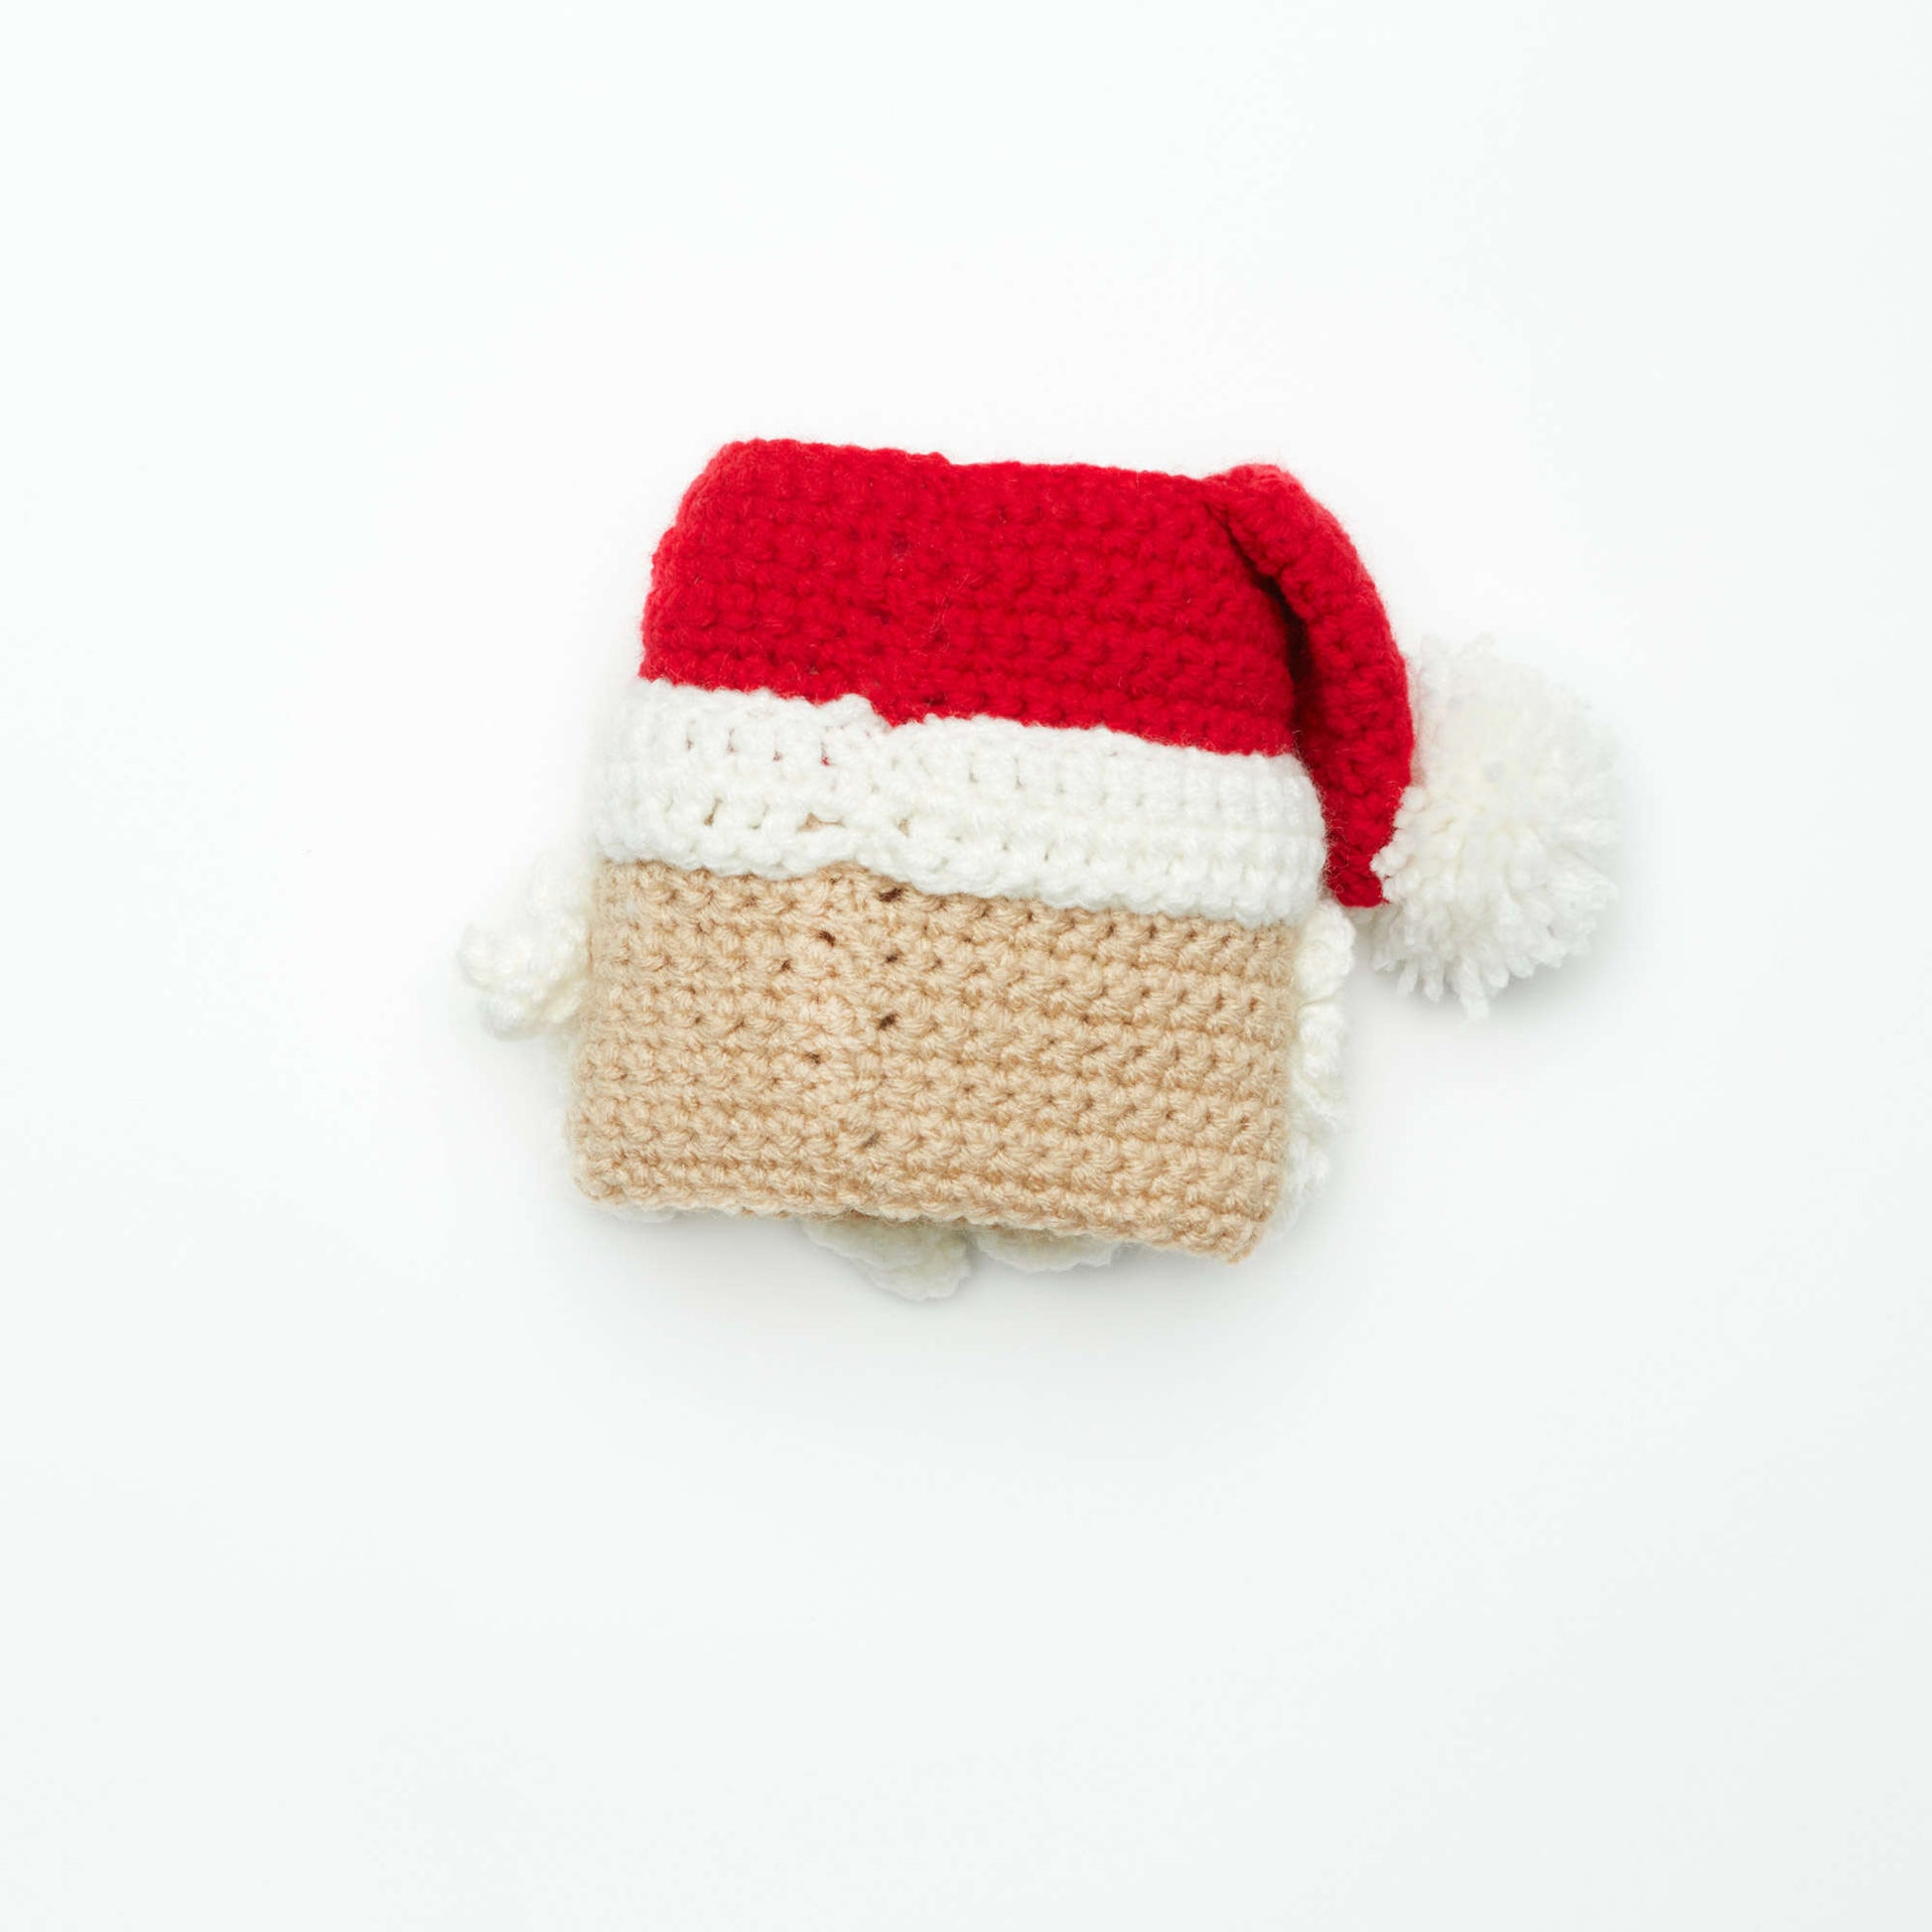 Free Red Heart Santa Candy Jar Crochet Pattern